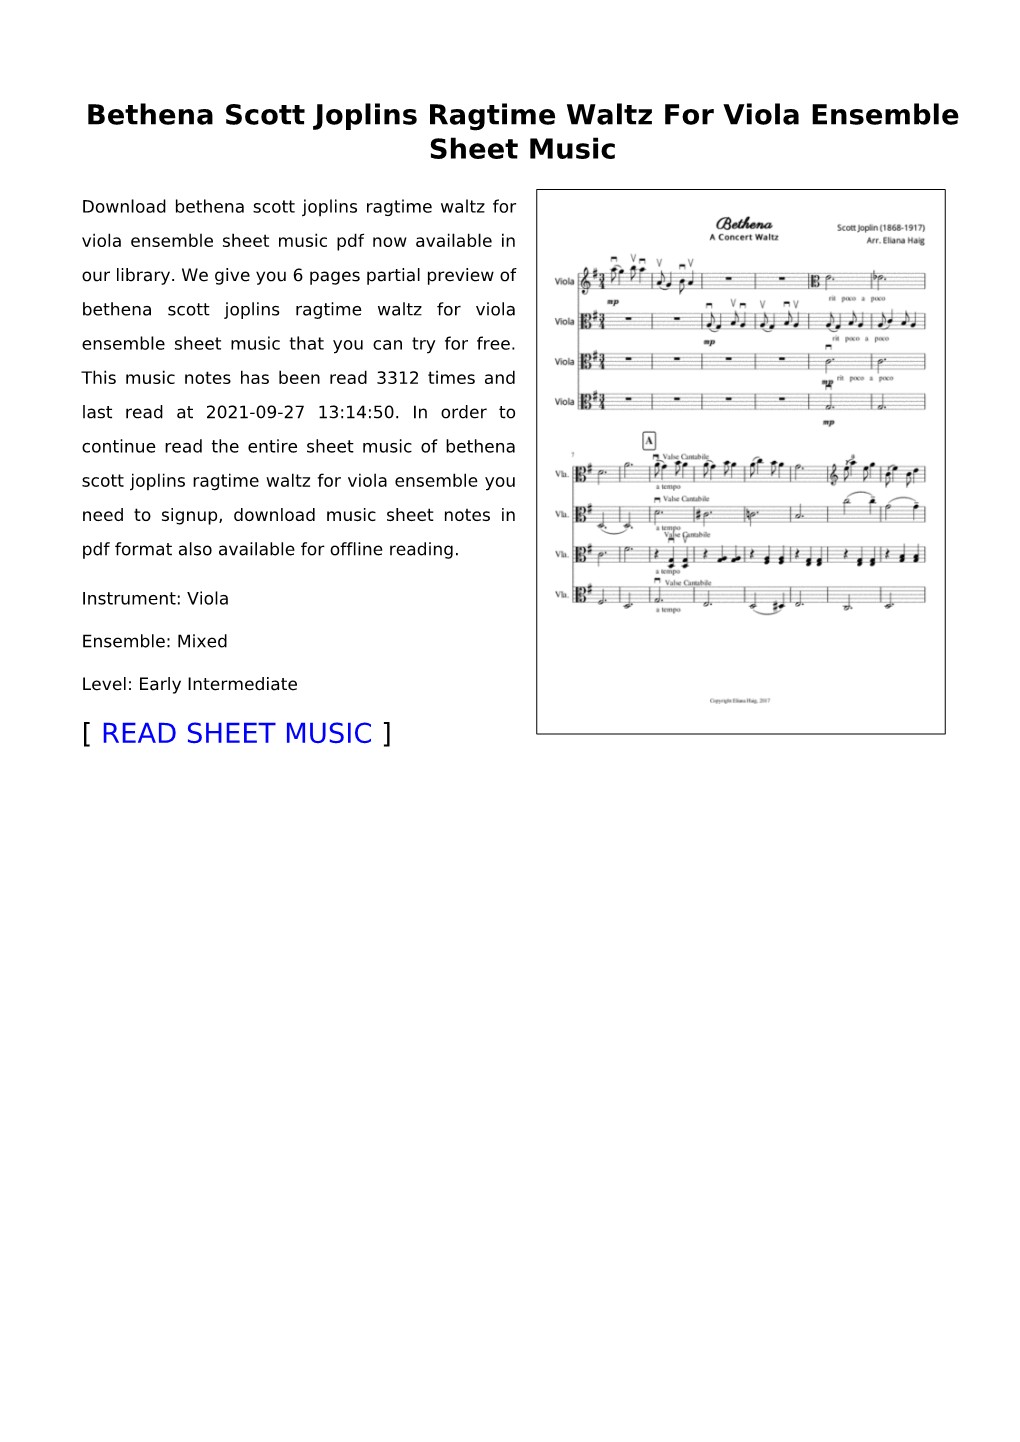 Bethena Scott Joplins Ragtime Waltz for Viola Ensemble Sheet Music